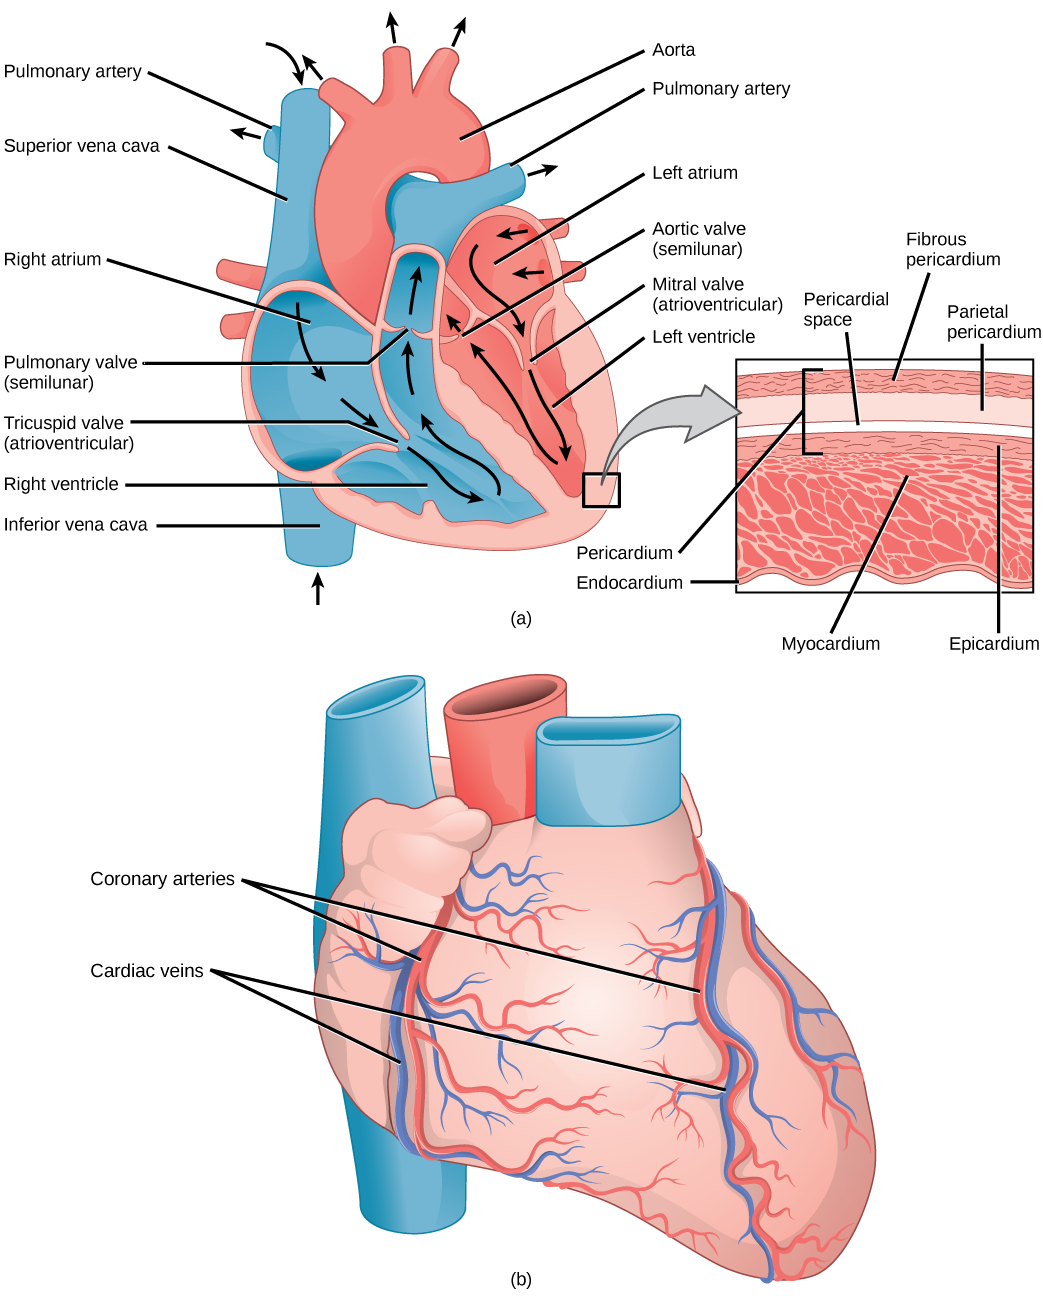 يوضح الرسم التوضيحي A أجزاء القلب. يدخل الدم إلى الأذين الأيمن من خلال الوريد الأجوف العلوي والوريد الأجوف السفلي السفلي. يتدفق الدم من الأذين الأيمن عبر الصمام ثلاثي الشرفات على شكل قمع إلى البطين الأيمن. ثم ينتقل الدم لأعلى ومن خلال الصمام الرئوي إلى الشريان الرئوي. يدخل الدم مرة أخرى إلى القلب من خلال الأوردة الرئوية، وينتقل من الأذين الأيسر، عبر الصمام التاجي، إلى البطين الأيمن. ثم ينتقل الدم عبر الصمام الأبهري إلى الشريان الأورطي. الصمامات ثلاثية الشرفات والمترالية هي الأذينية البطينية وعلى شكل قمع. تكون الصمامات الرئوية والأبهرية شبه قمرية ومنحنية قليلاً. يُظهر الجزء الداخلي مقطعًا عرضيًا للقلب. عضلة القلب هي طبقة العضلات السميكة. تتم حماية الجزء الداخلي من القلب بواسطة الشغاف، والجزء الخارجي محمي بواسطة التامور. يُظهر الرسم التوضيحي B الجزء الخارجي من القلب. تمتد الشرايين التاجية والأوردة التاجية من الأعلى إلى الأسفل على طول الجانبين الأيمن والأيسر.